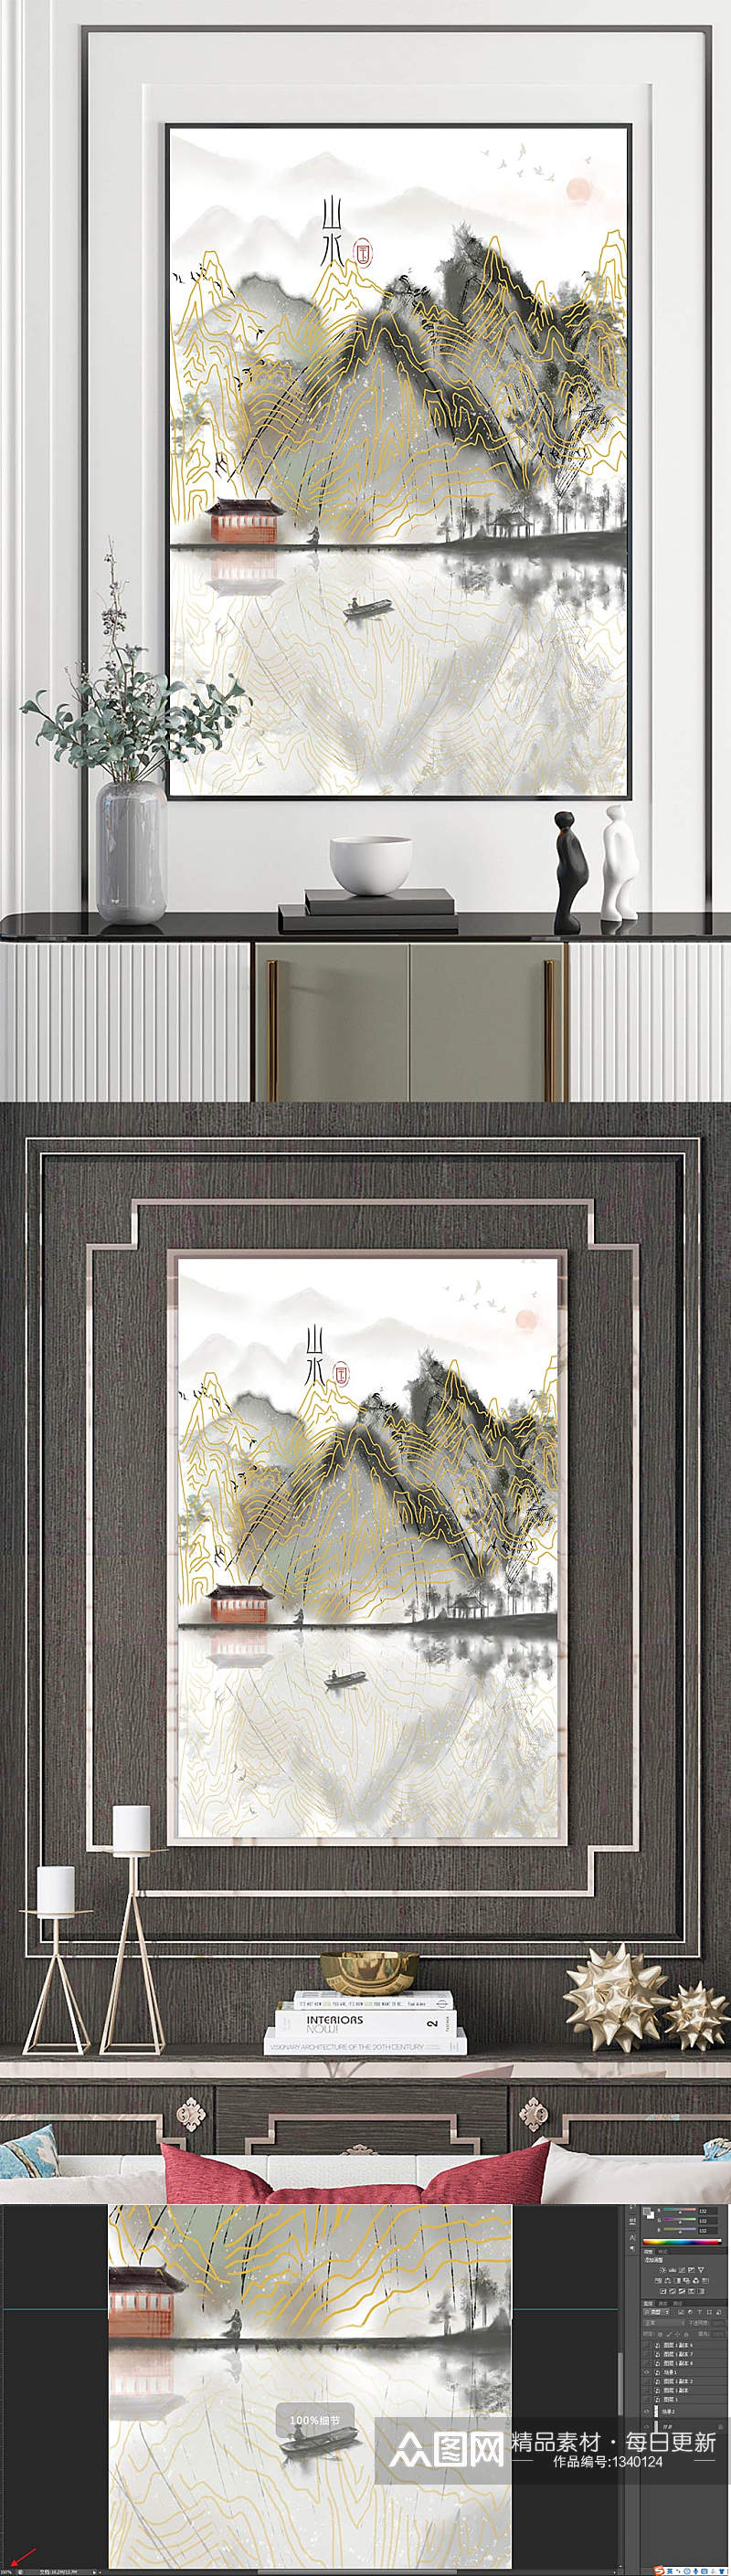 简约新中式山水装饰挂画素材